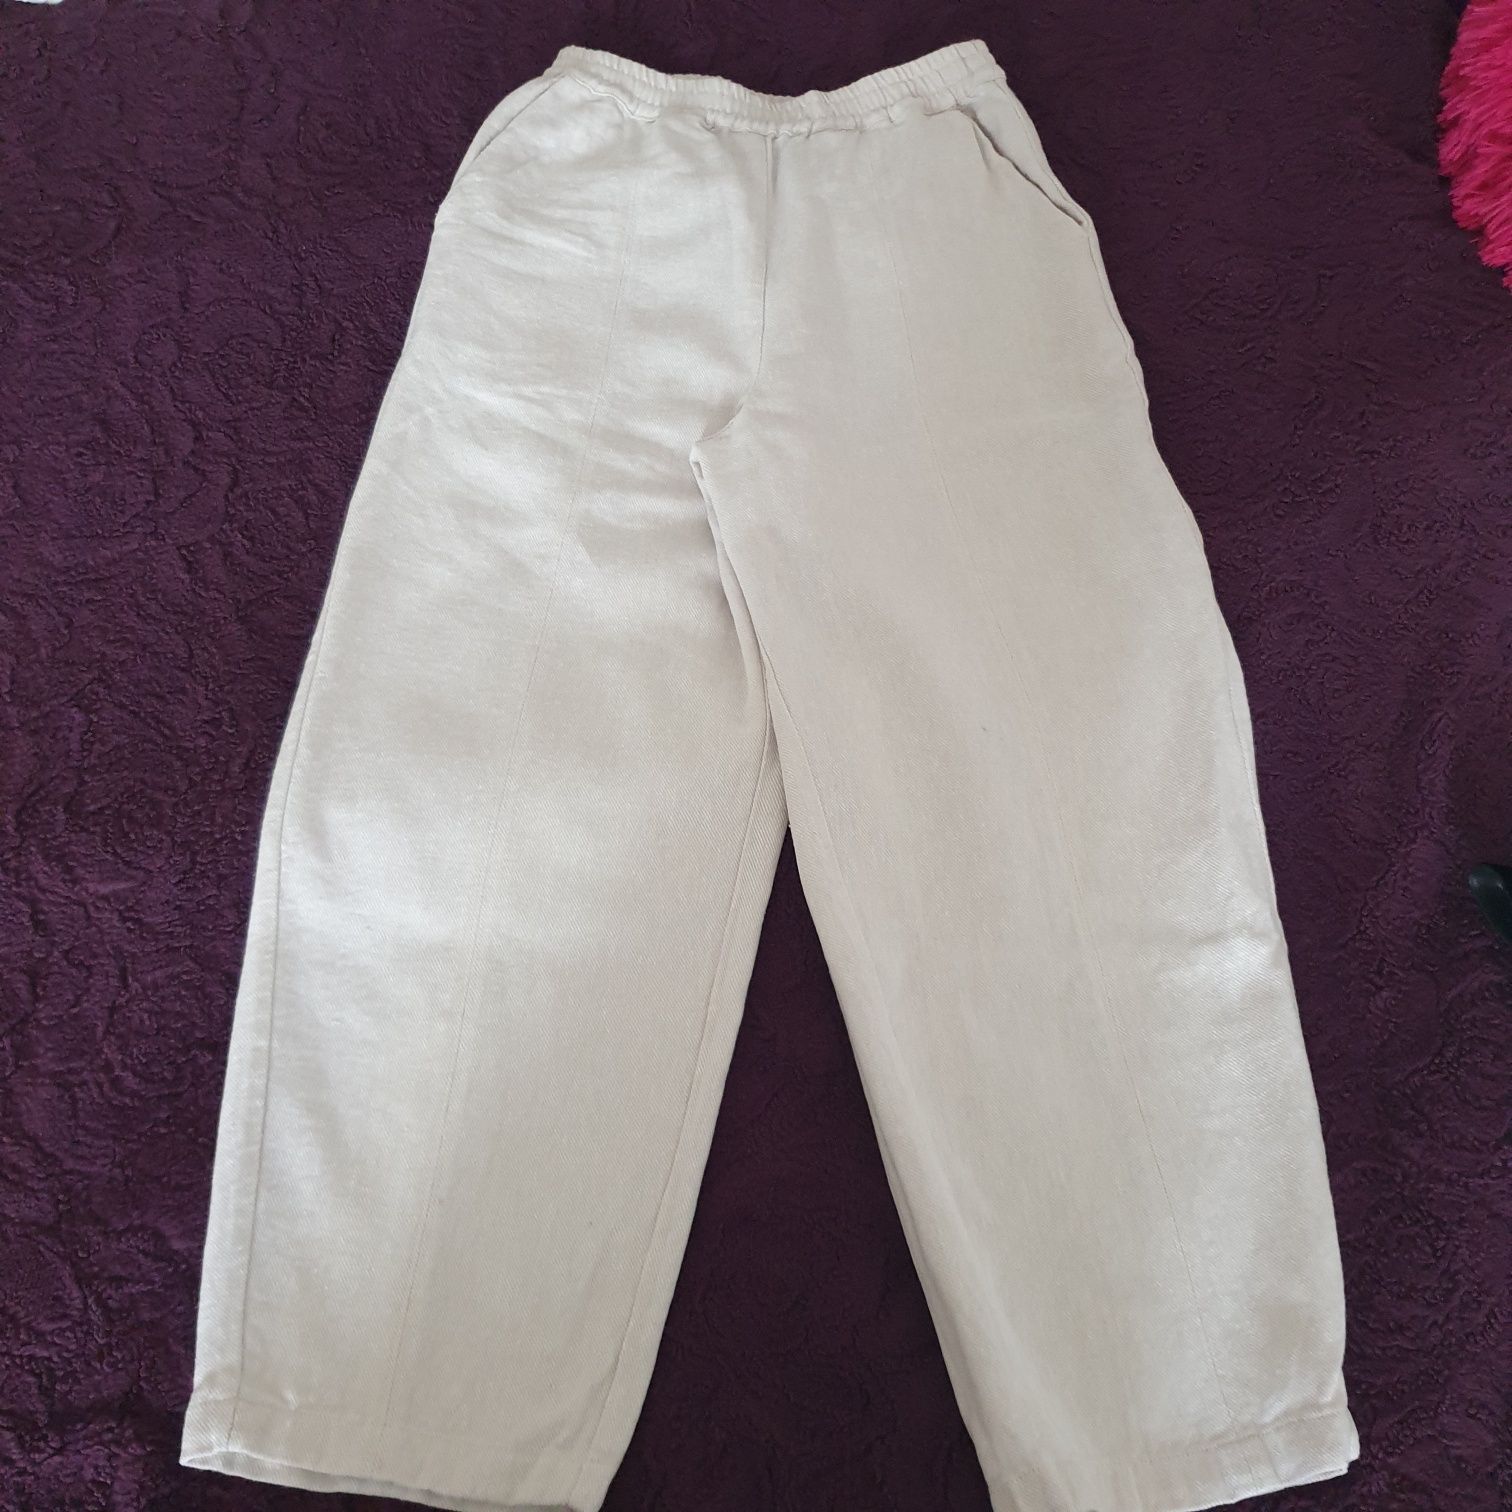 летни дънки и панталон от лен - размери 34, обща цена=45лв